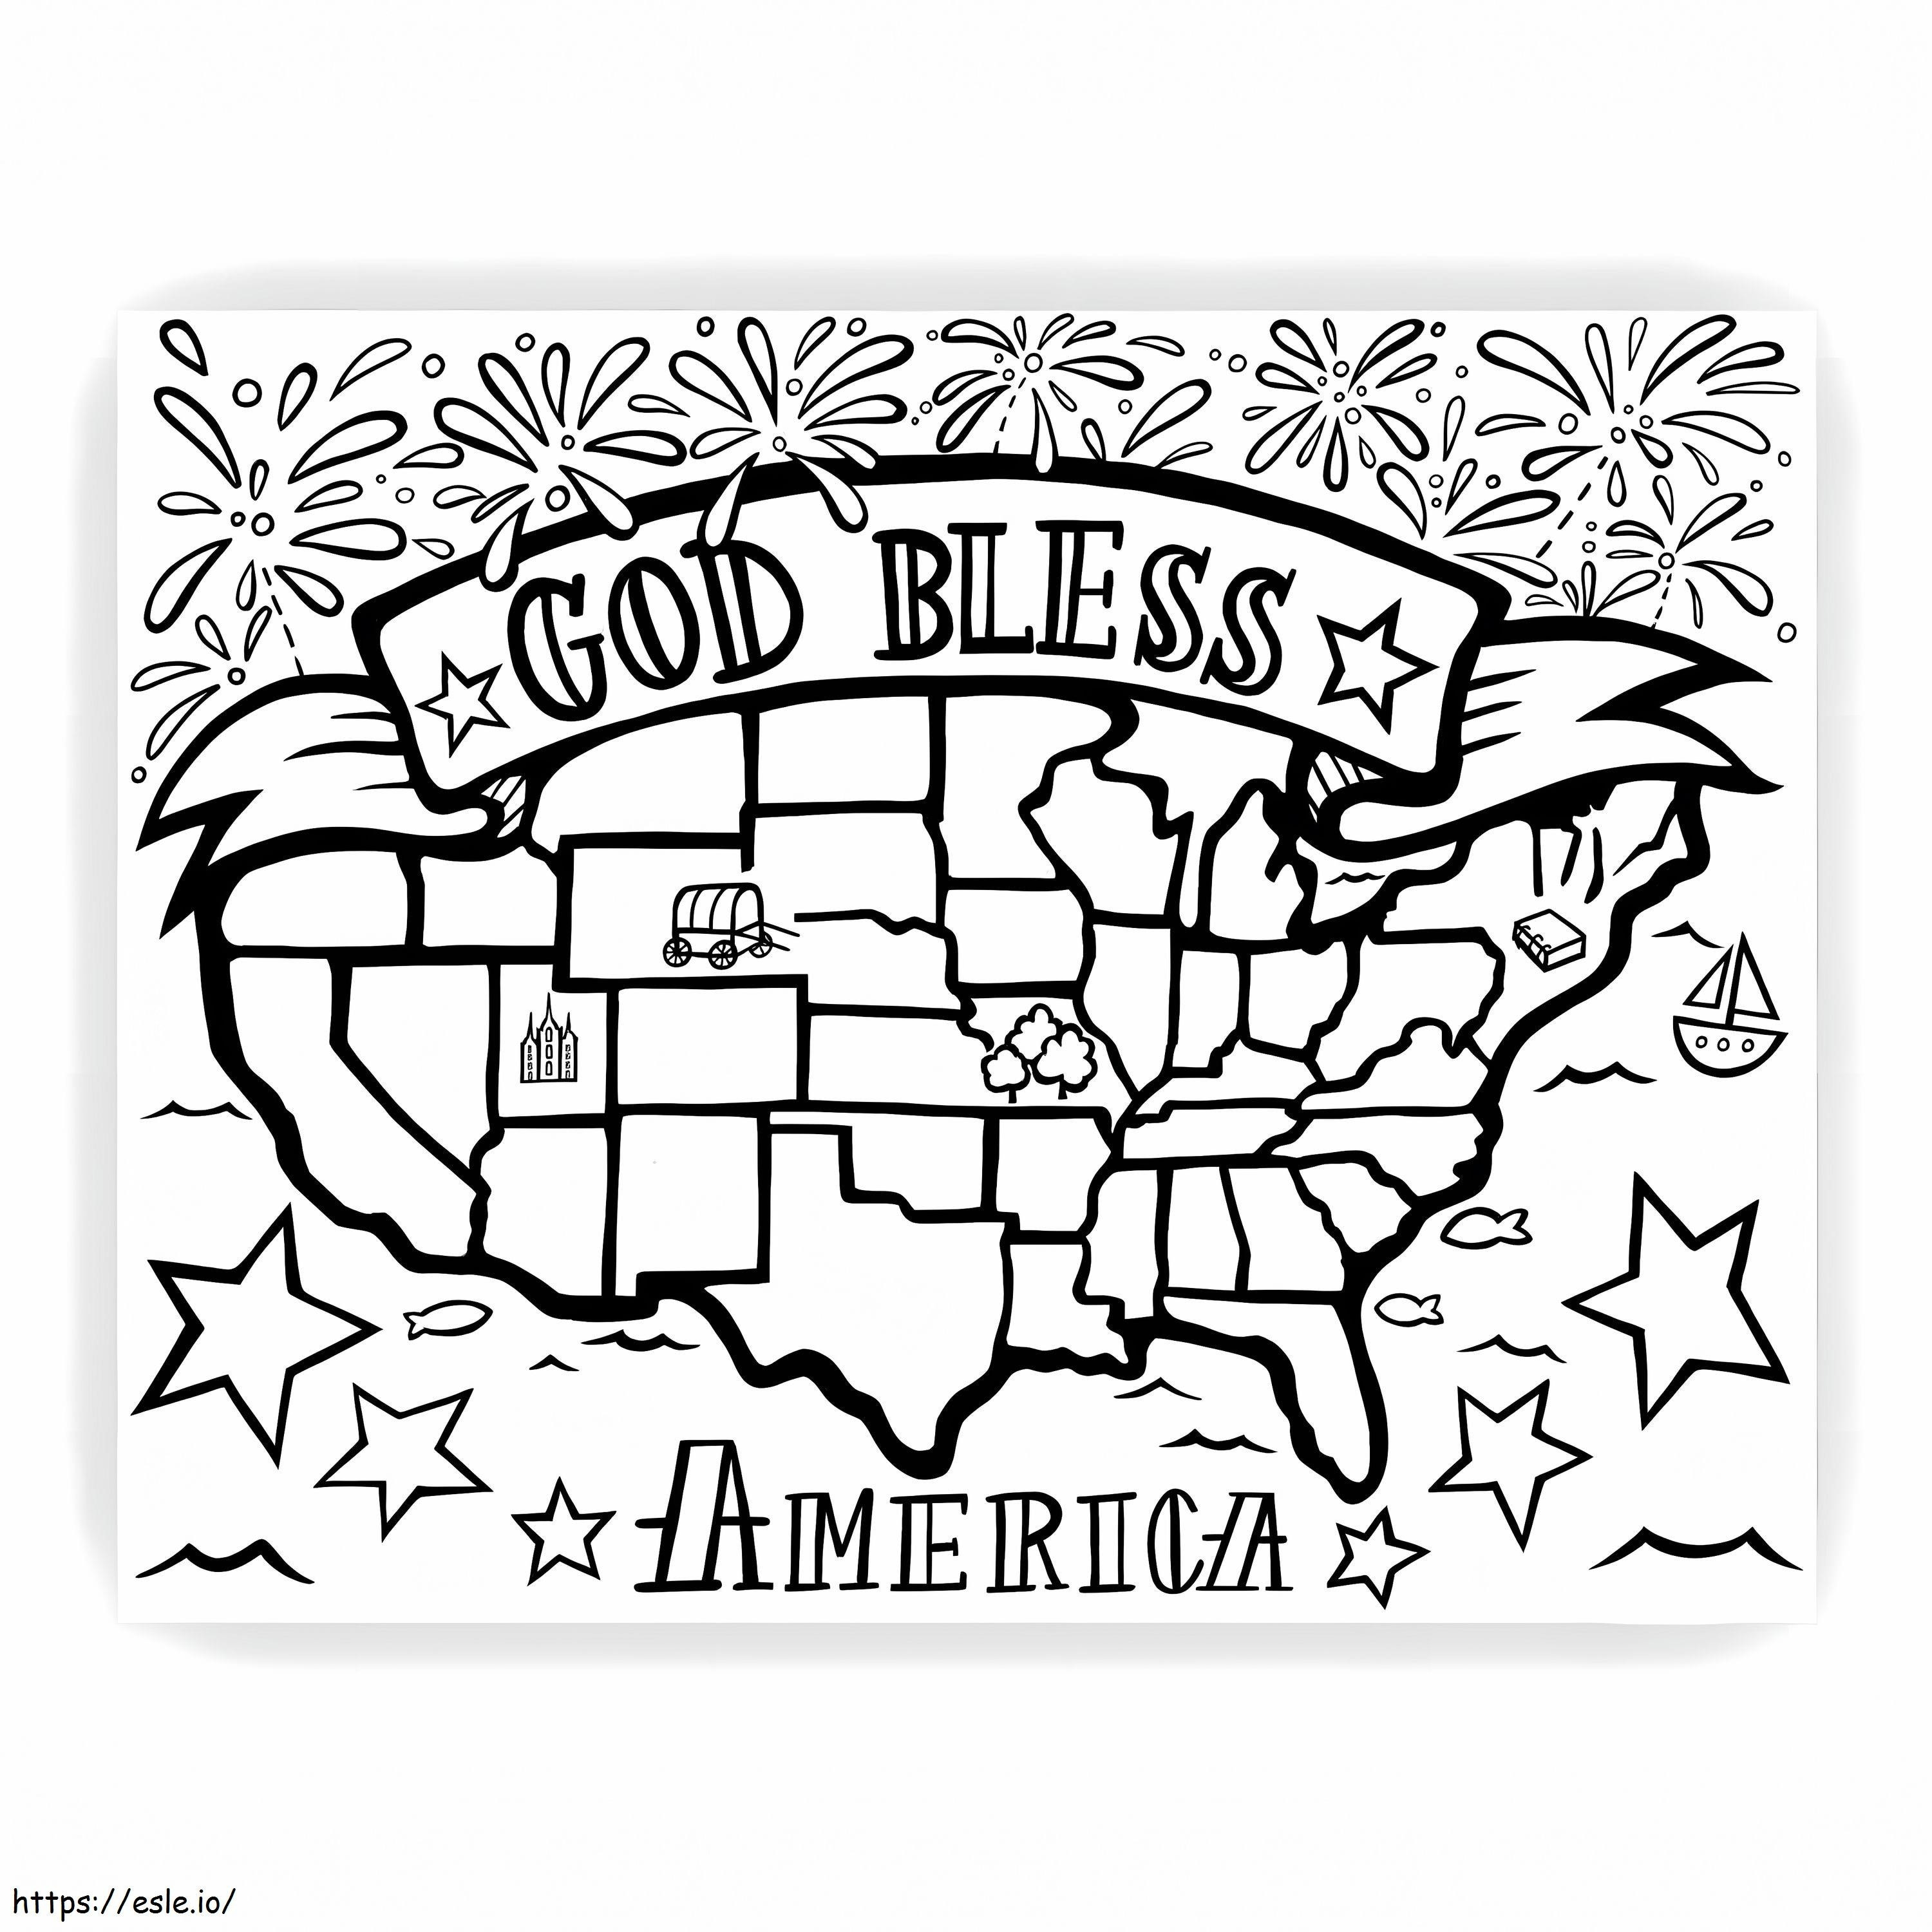 Jumala siunatkoon Amerikkaa värityskuva